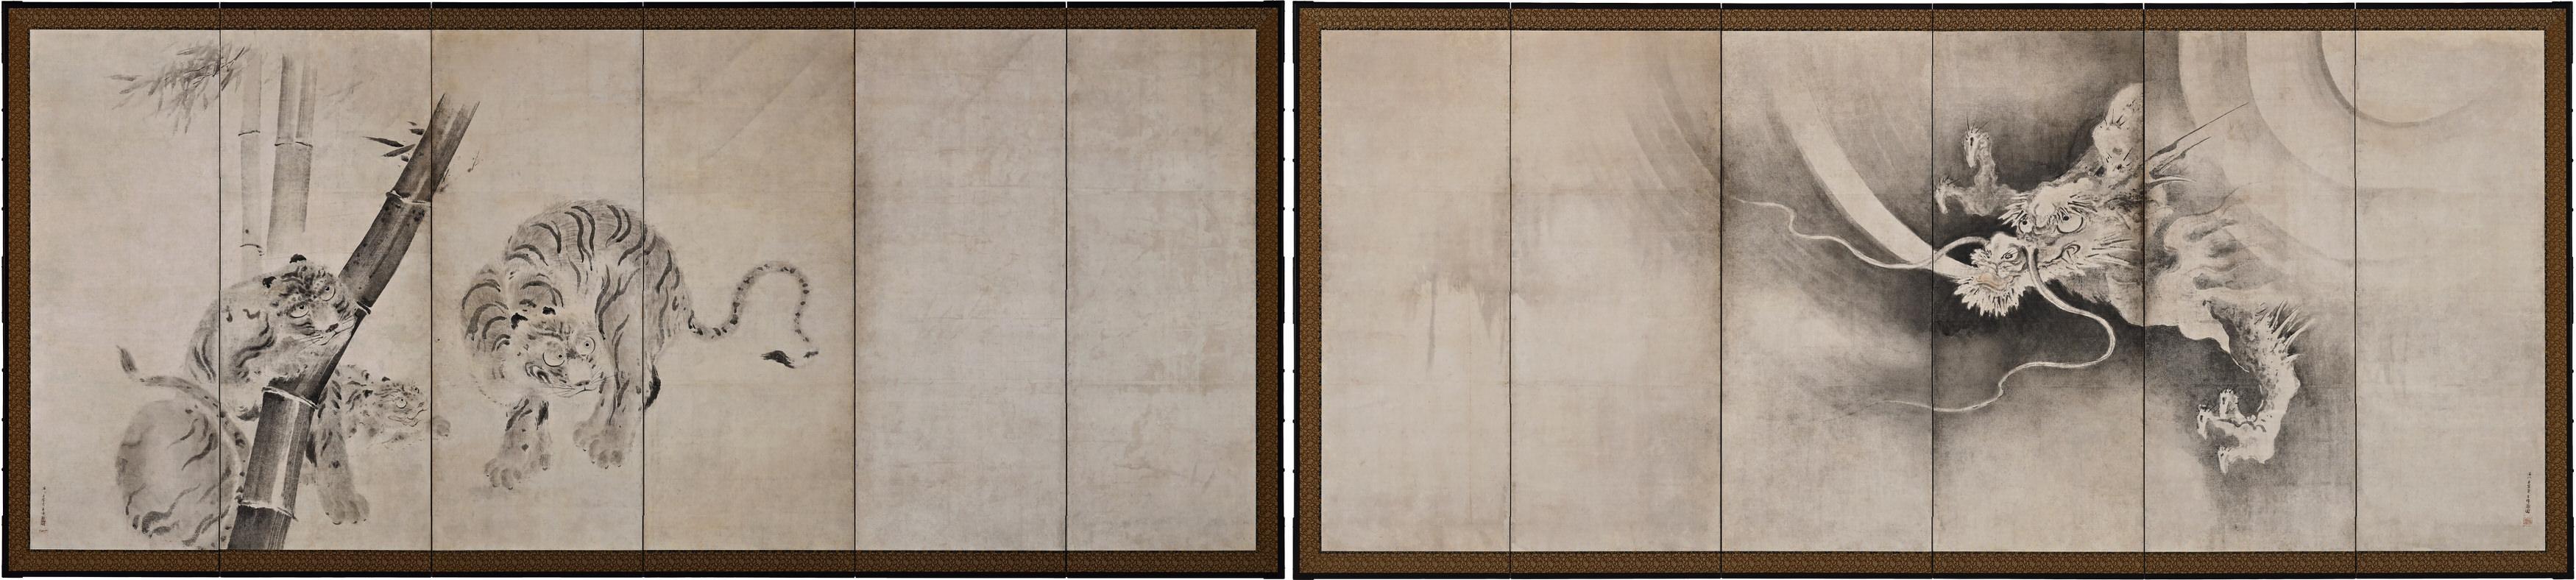 Kaiho Yusetsu (1598-1677)

Le tigre et le dragon

Début de la période Edo, vers 1650

Paire de paravents japonais à six volets. Encre et couleurs légères sur papier.

Dimensions :

Chaque écran : H. 171 cm x L. 380 cm (67,5'' x